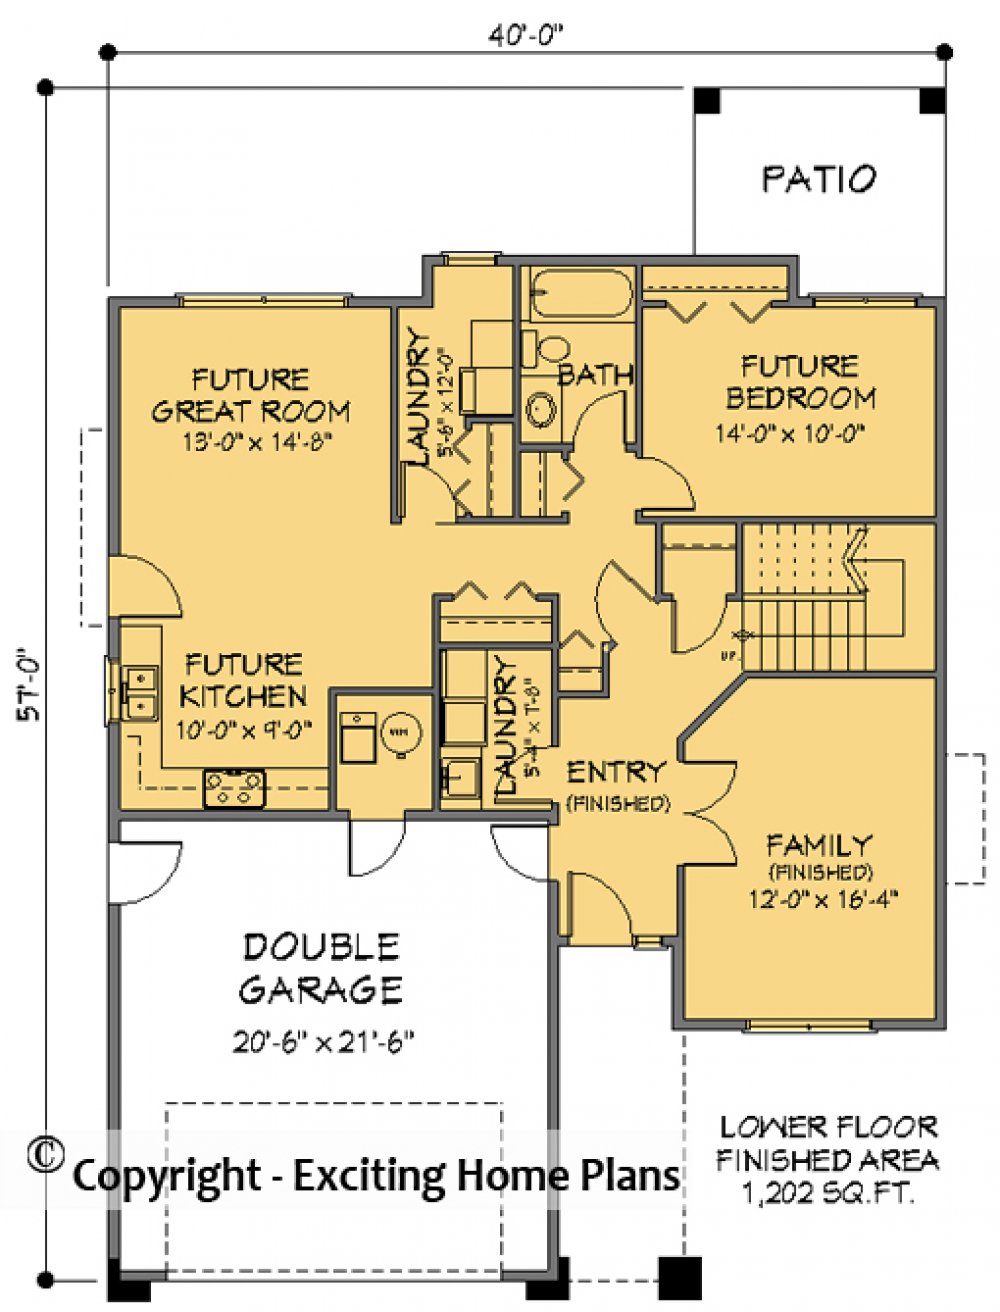 House Plan E1038-10  Lower Floor Plan